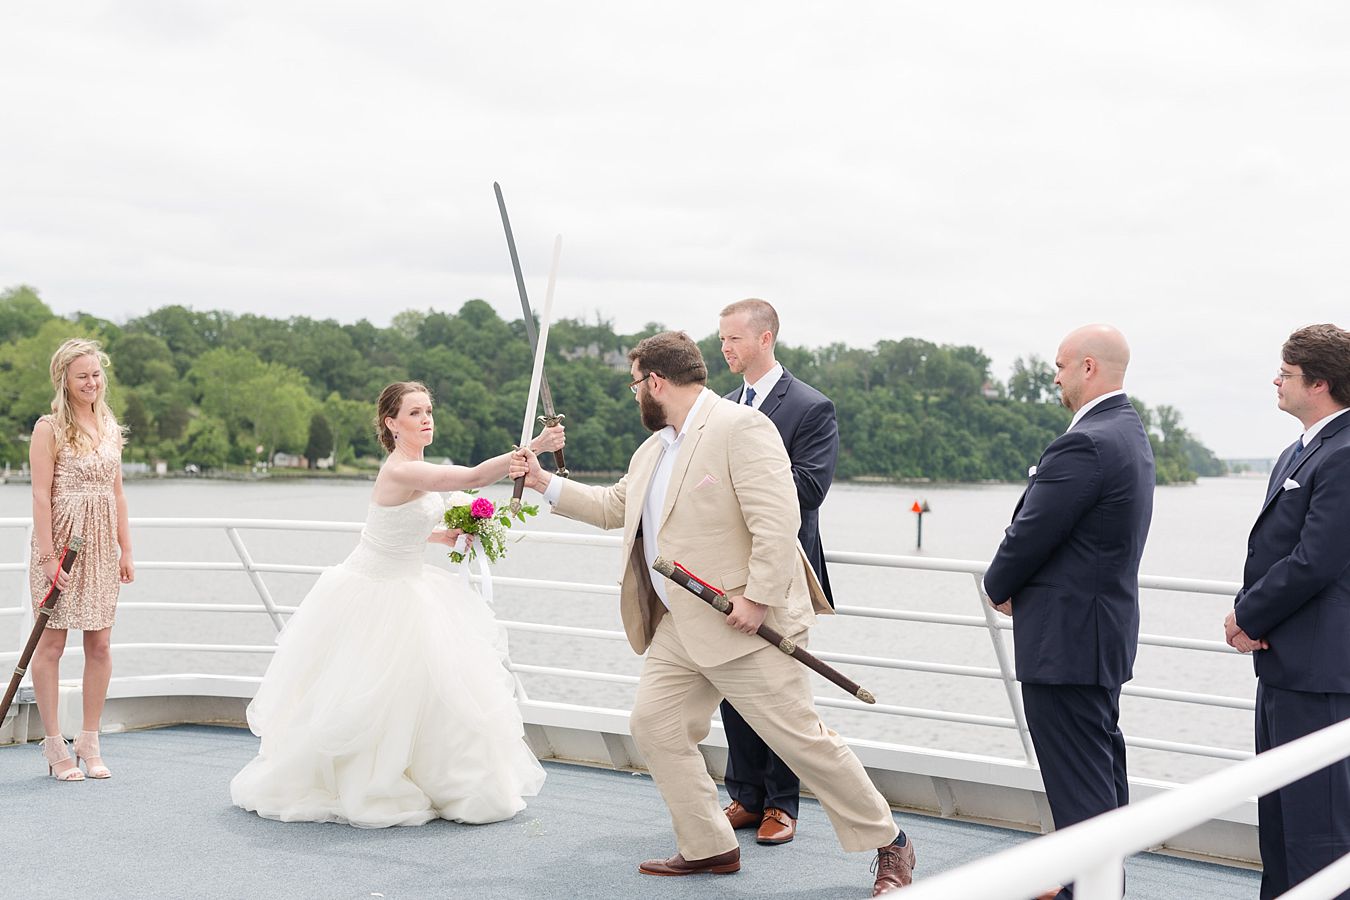 unique wedding ceremonies, wedding venues in annapolis